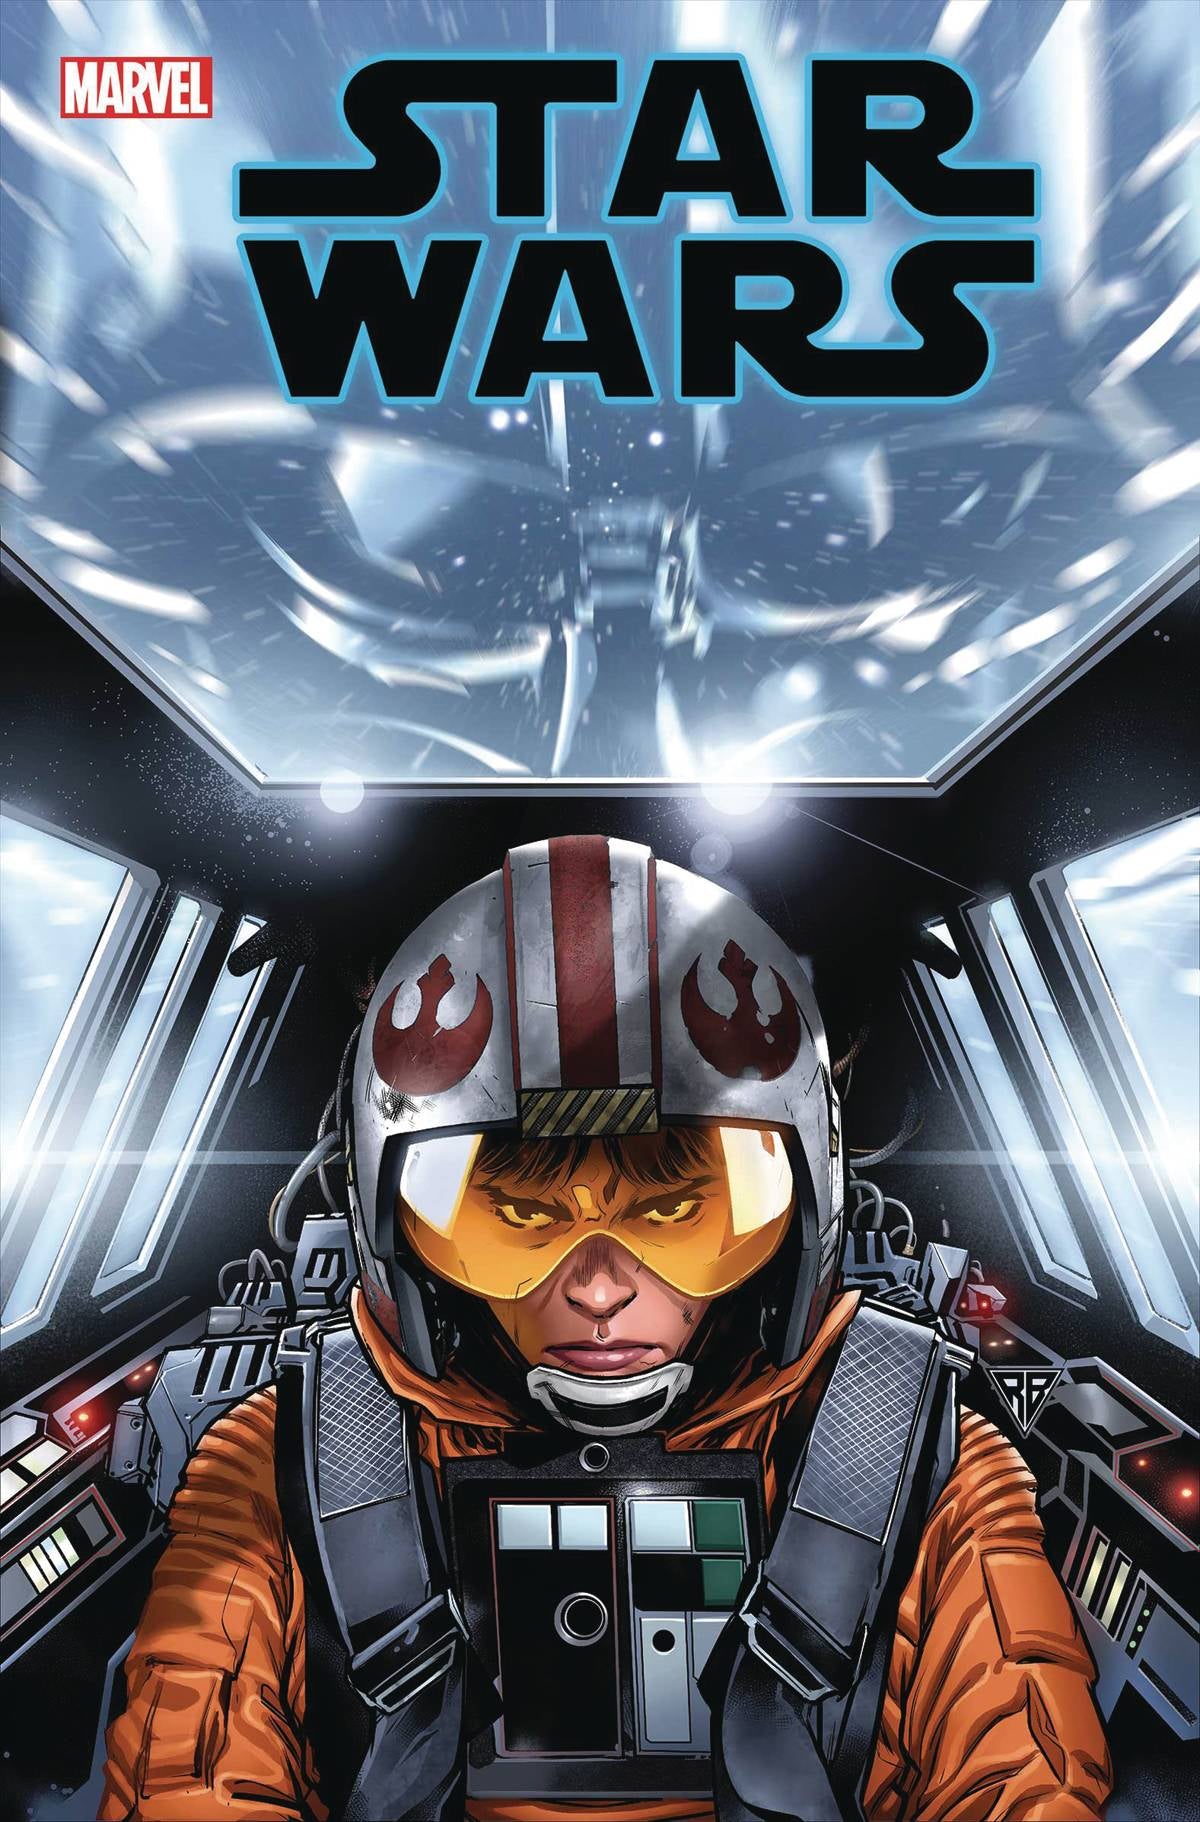 Star Wars Vol. 3 #5